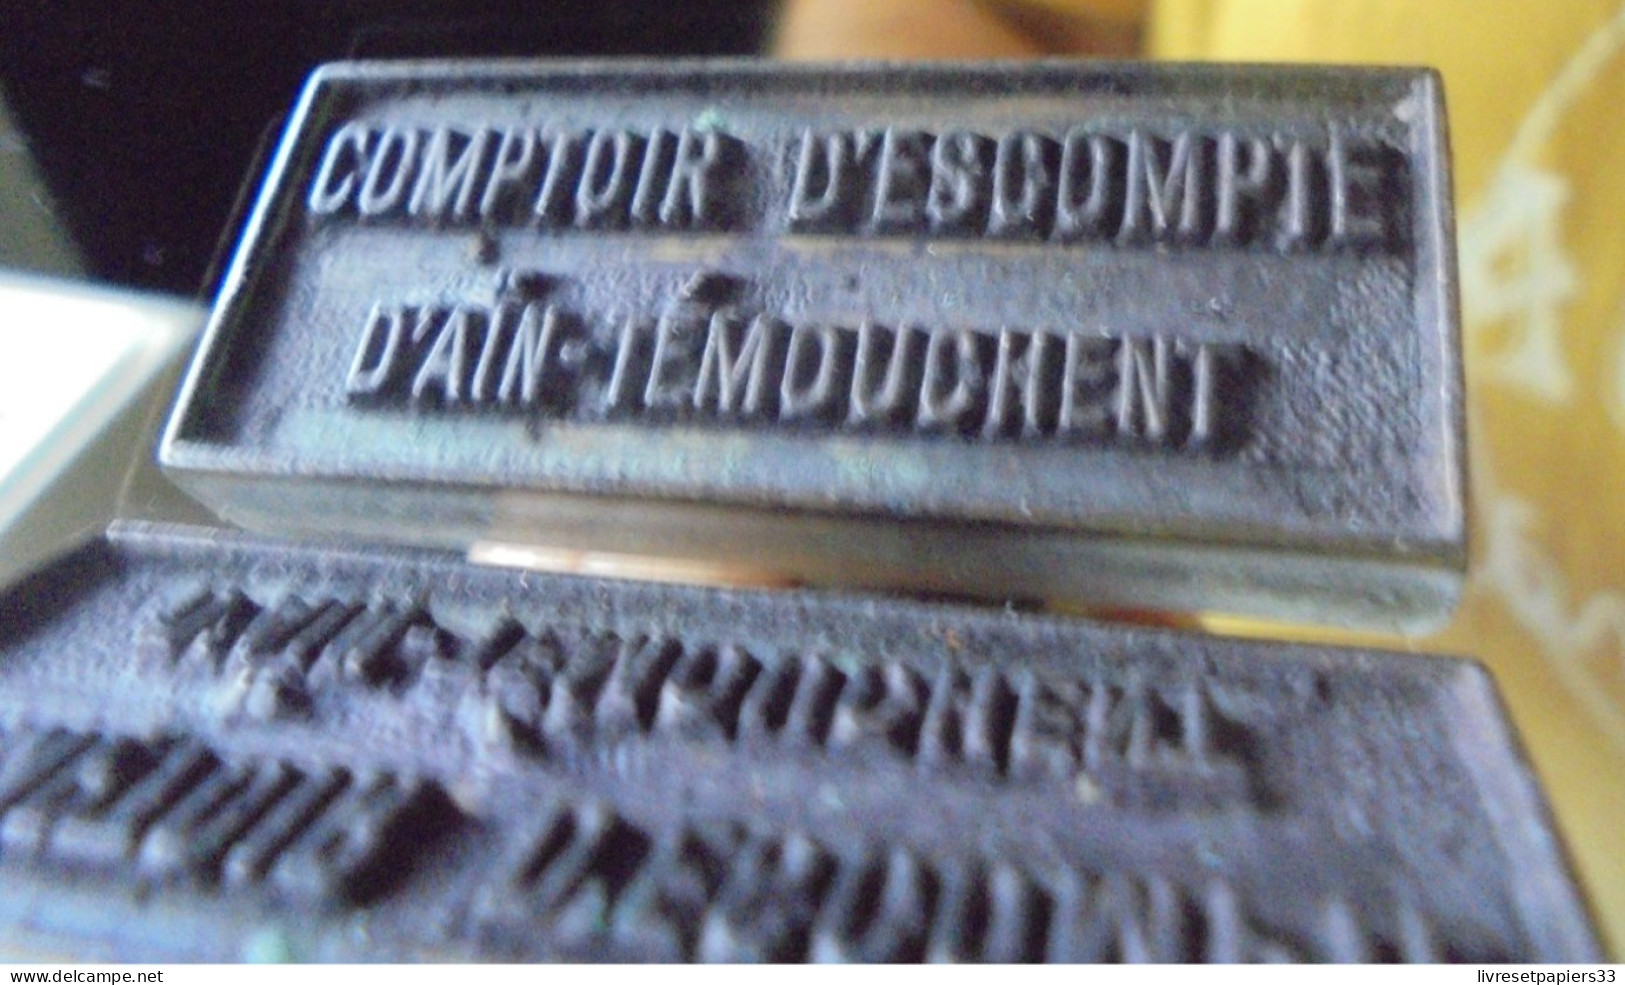 Ancien Tampon COMPTOIR D'ESCOMPTE D'AIN TEMOUCHENT Algérie Banque - Timbri